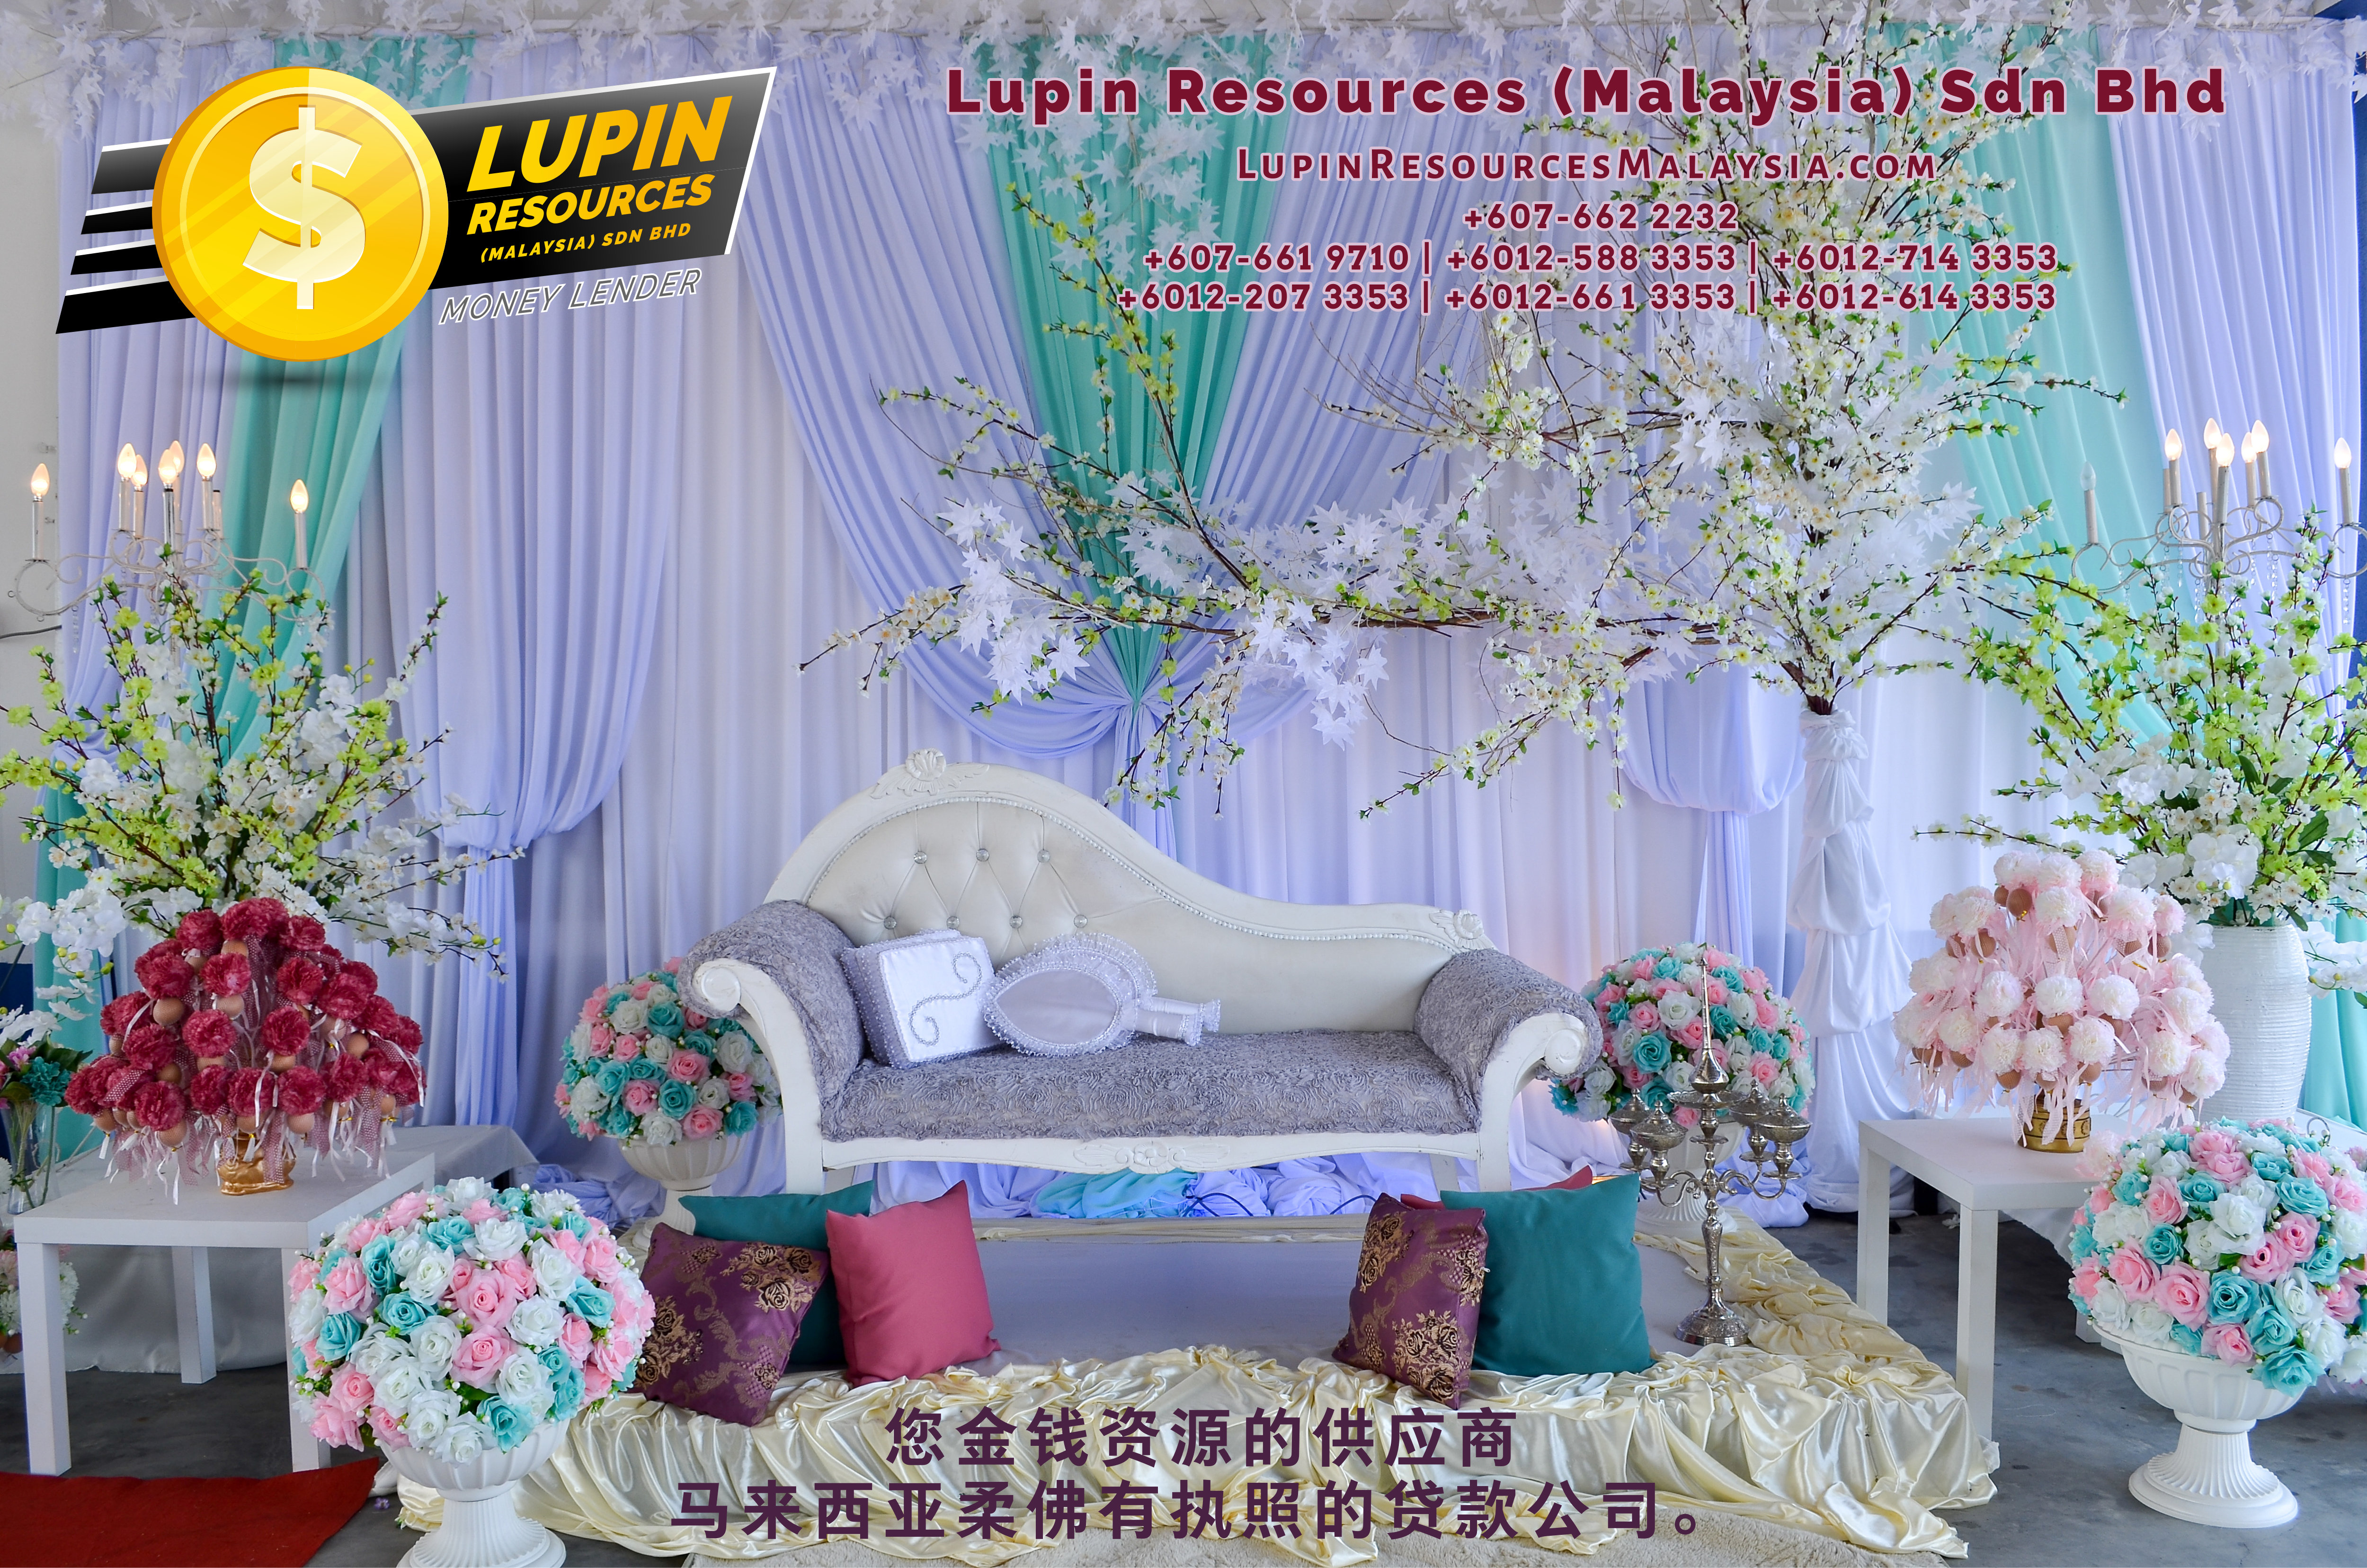 柔佛有执照的贷款公司 Lupin Resources Malaysia SDN BHD 您金钱资源的供应商 古来 柔佛 马来西亚 个人贷款 商业贷款 低利息抵押代款 经济 A01-55